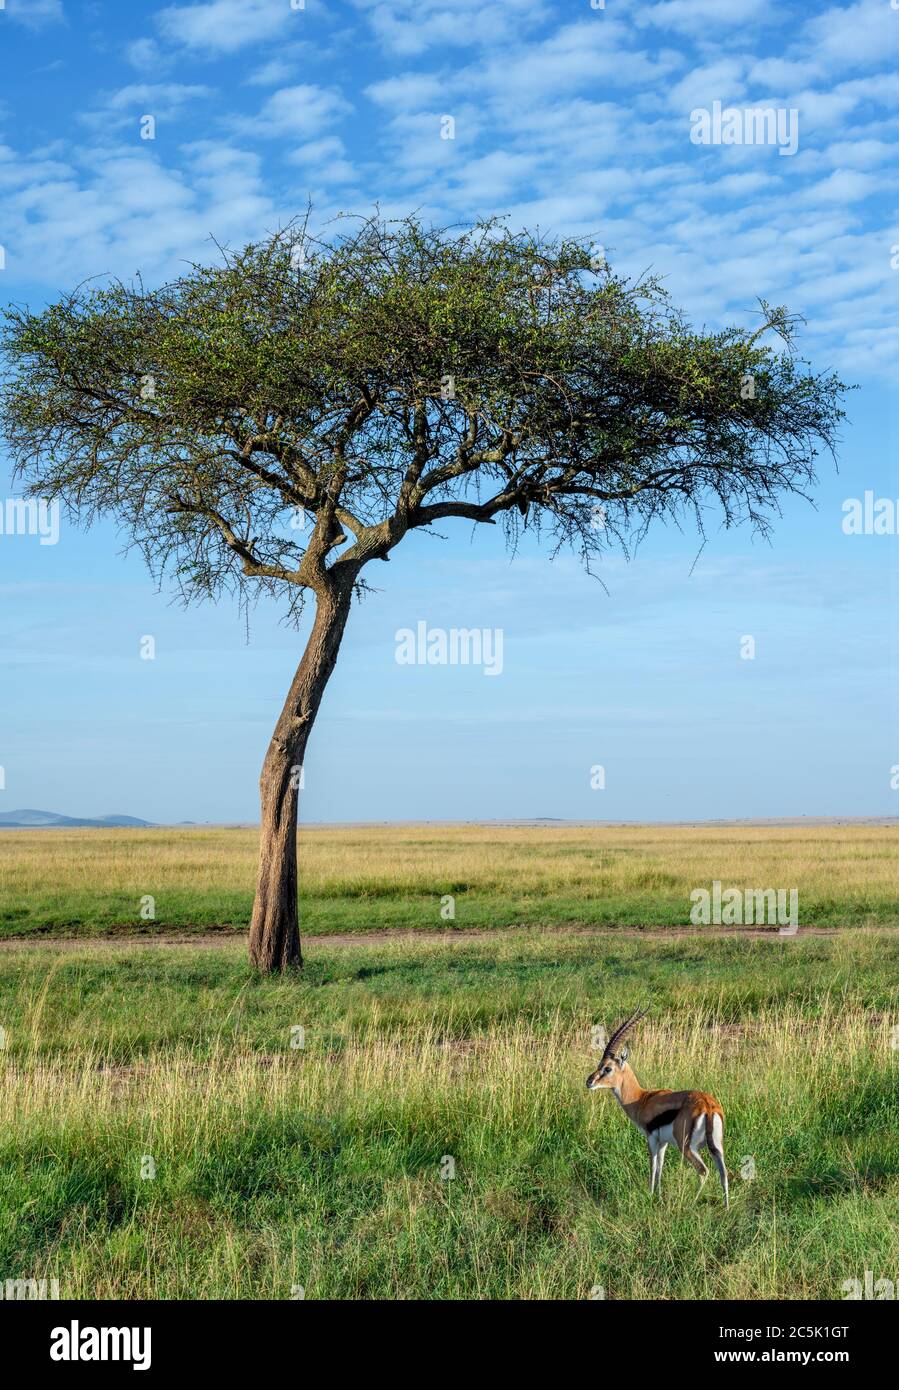 Gazelle de Thomson (Eudorcas thomsonii) dans un paysage d'Afrique de l'est, réserve nationale de Masai Mara, Kenya, Afrique Banque D'Images